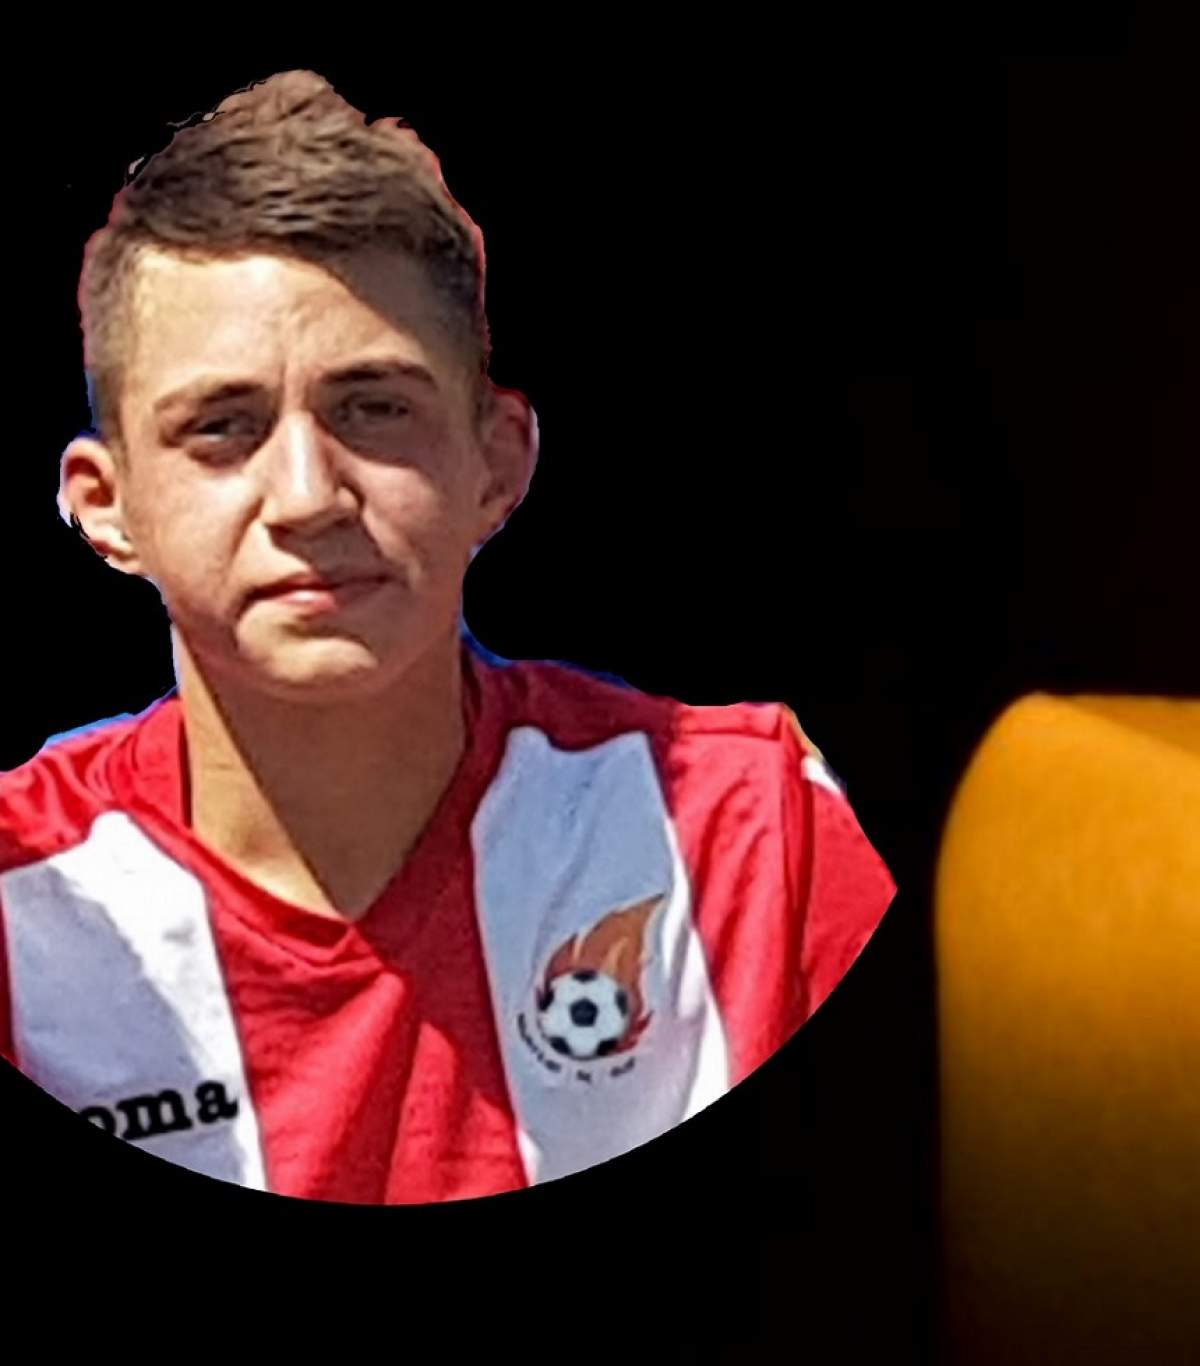 Tragedie în fotbalul românesc! Un tânăr jucător s-a stins din viaţă la 16 ani. Cauza decesului este nimicitoare